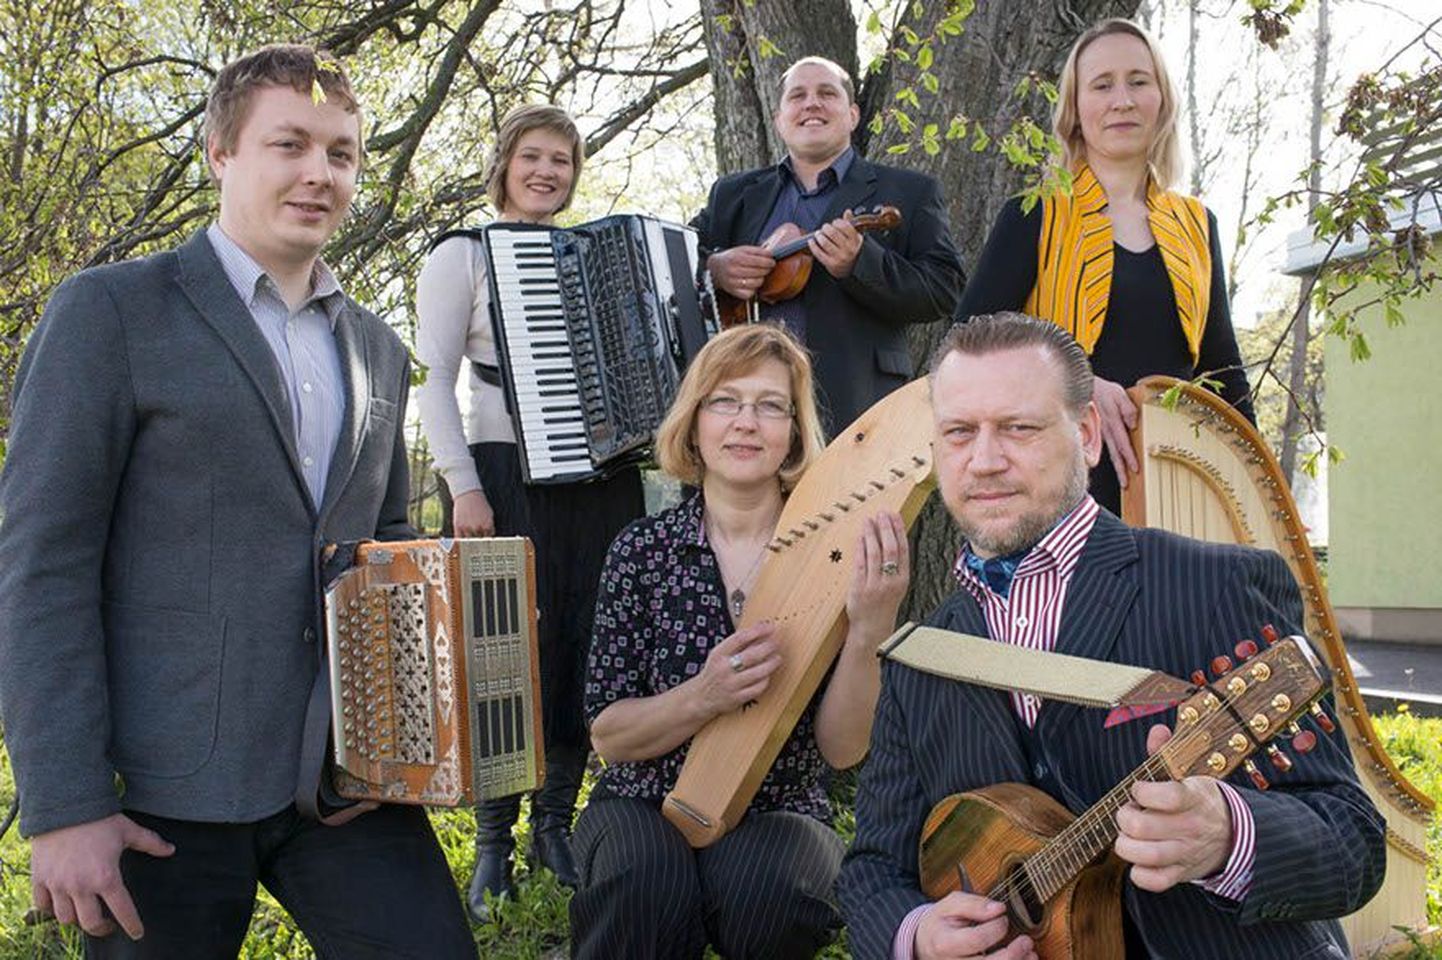 Fotol: Juhan Uppin (vasakul), Kristel Laas (akordioniga), Enrik Visla (viiuliga), Ella Maidre (suure kandlega), Pille Karras (väikekandlega), Jaanus Põlder (mandoliiniga)